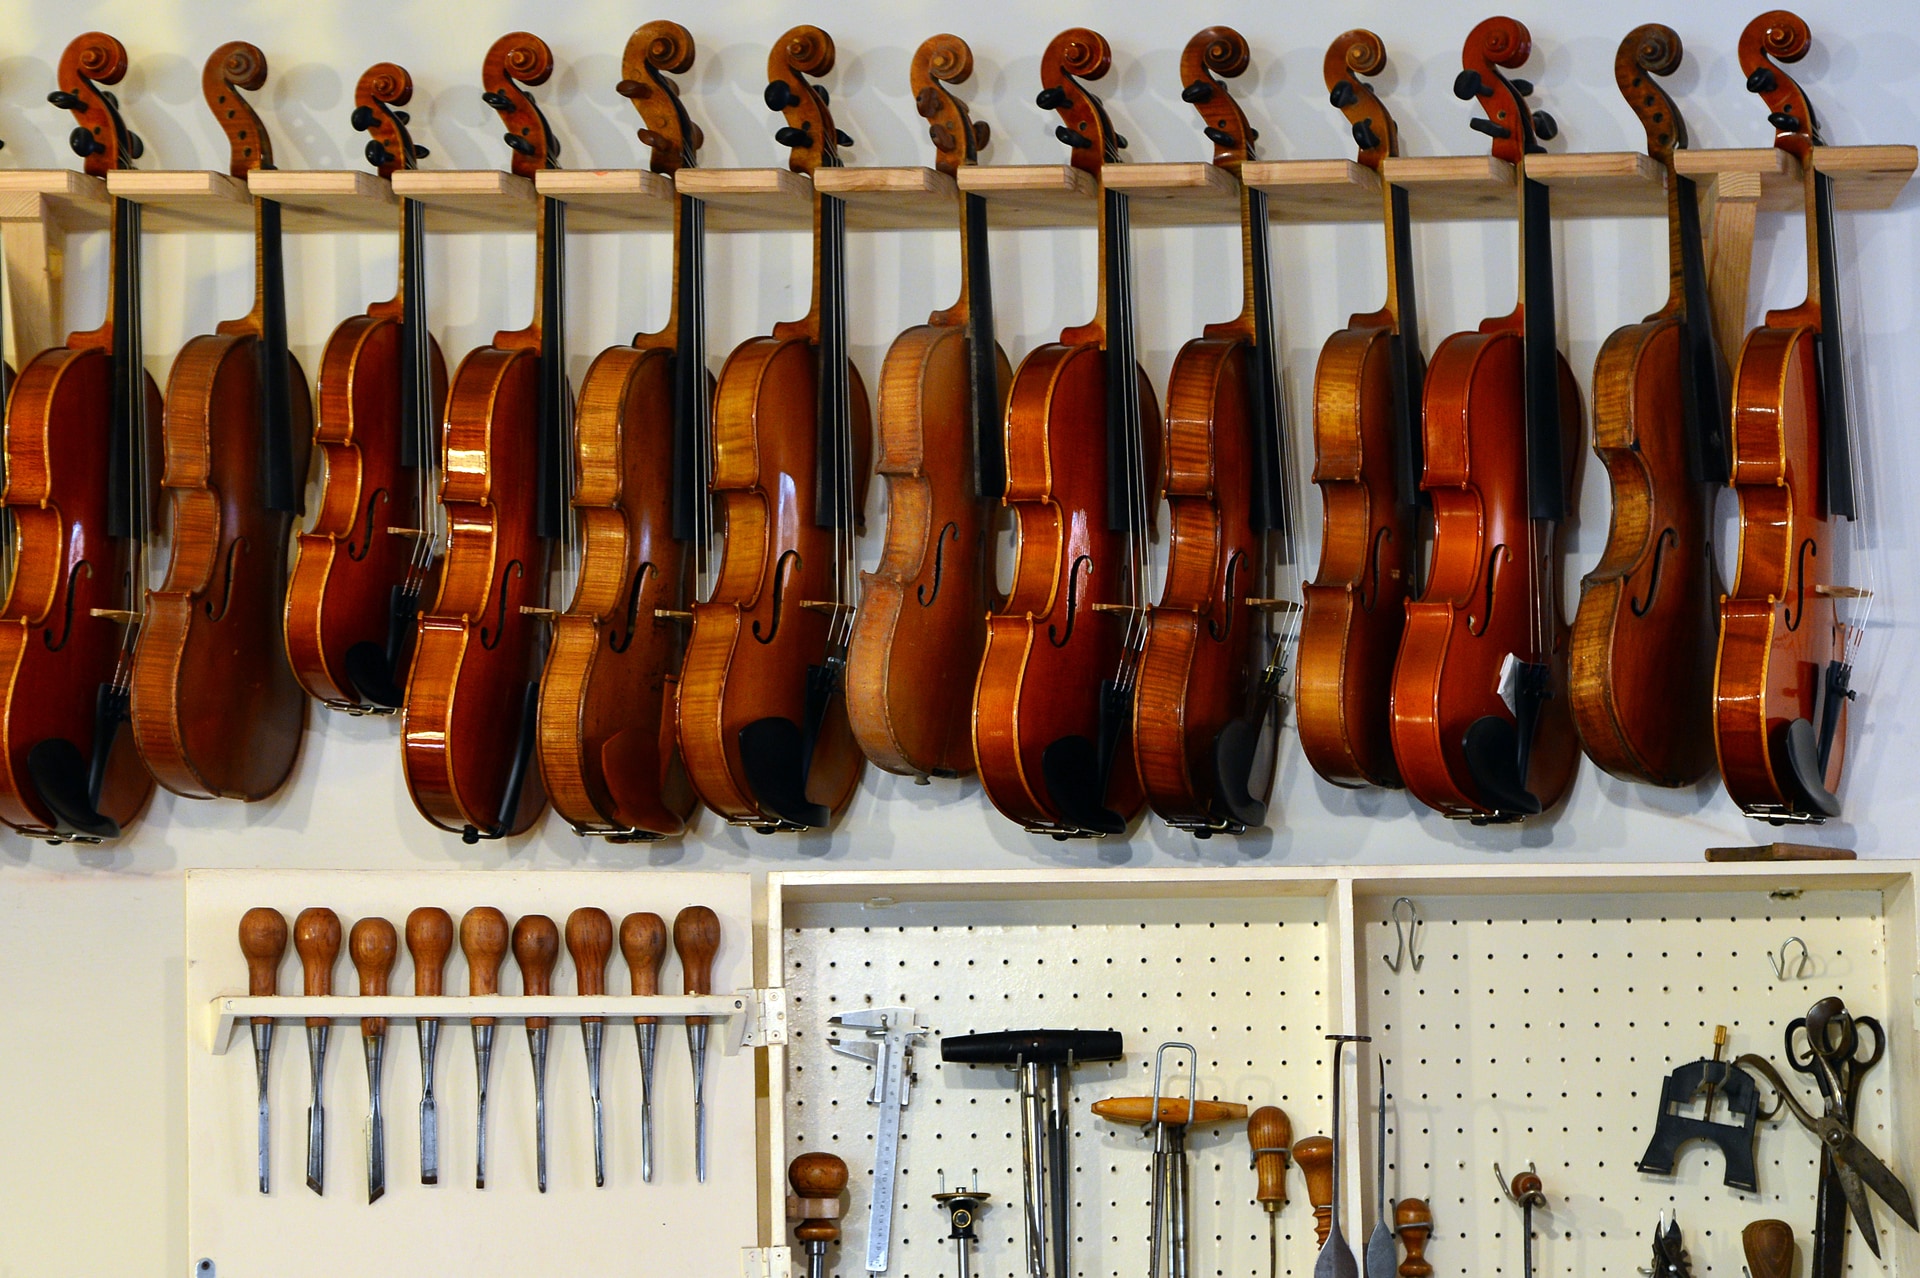 2013: violini e viole esposti nel laboratorio di Mathias Menanteau, liutaio francese che, dopo aver studiato e lavorato in Inghilterra e in Germania, si è trasferito a Roma.